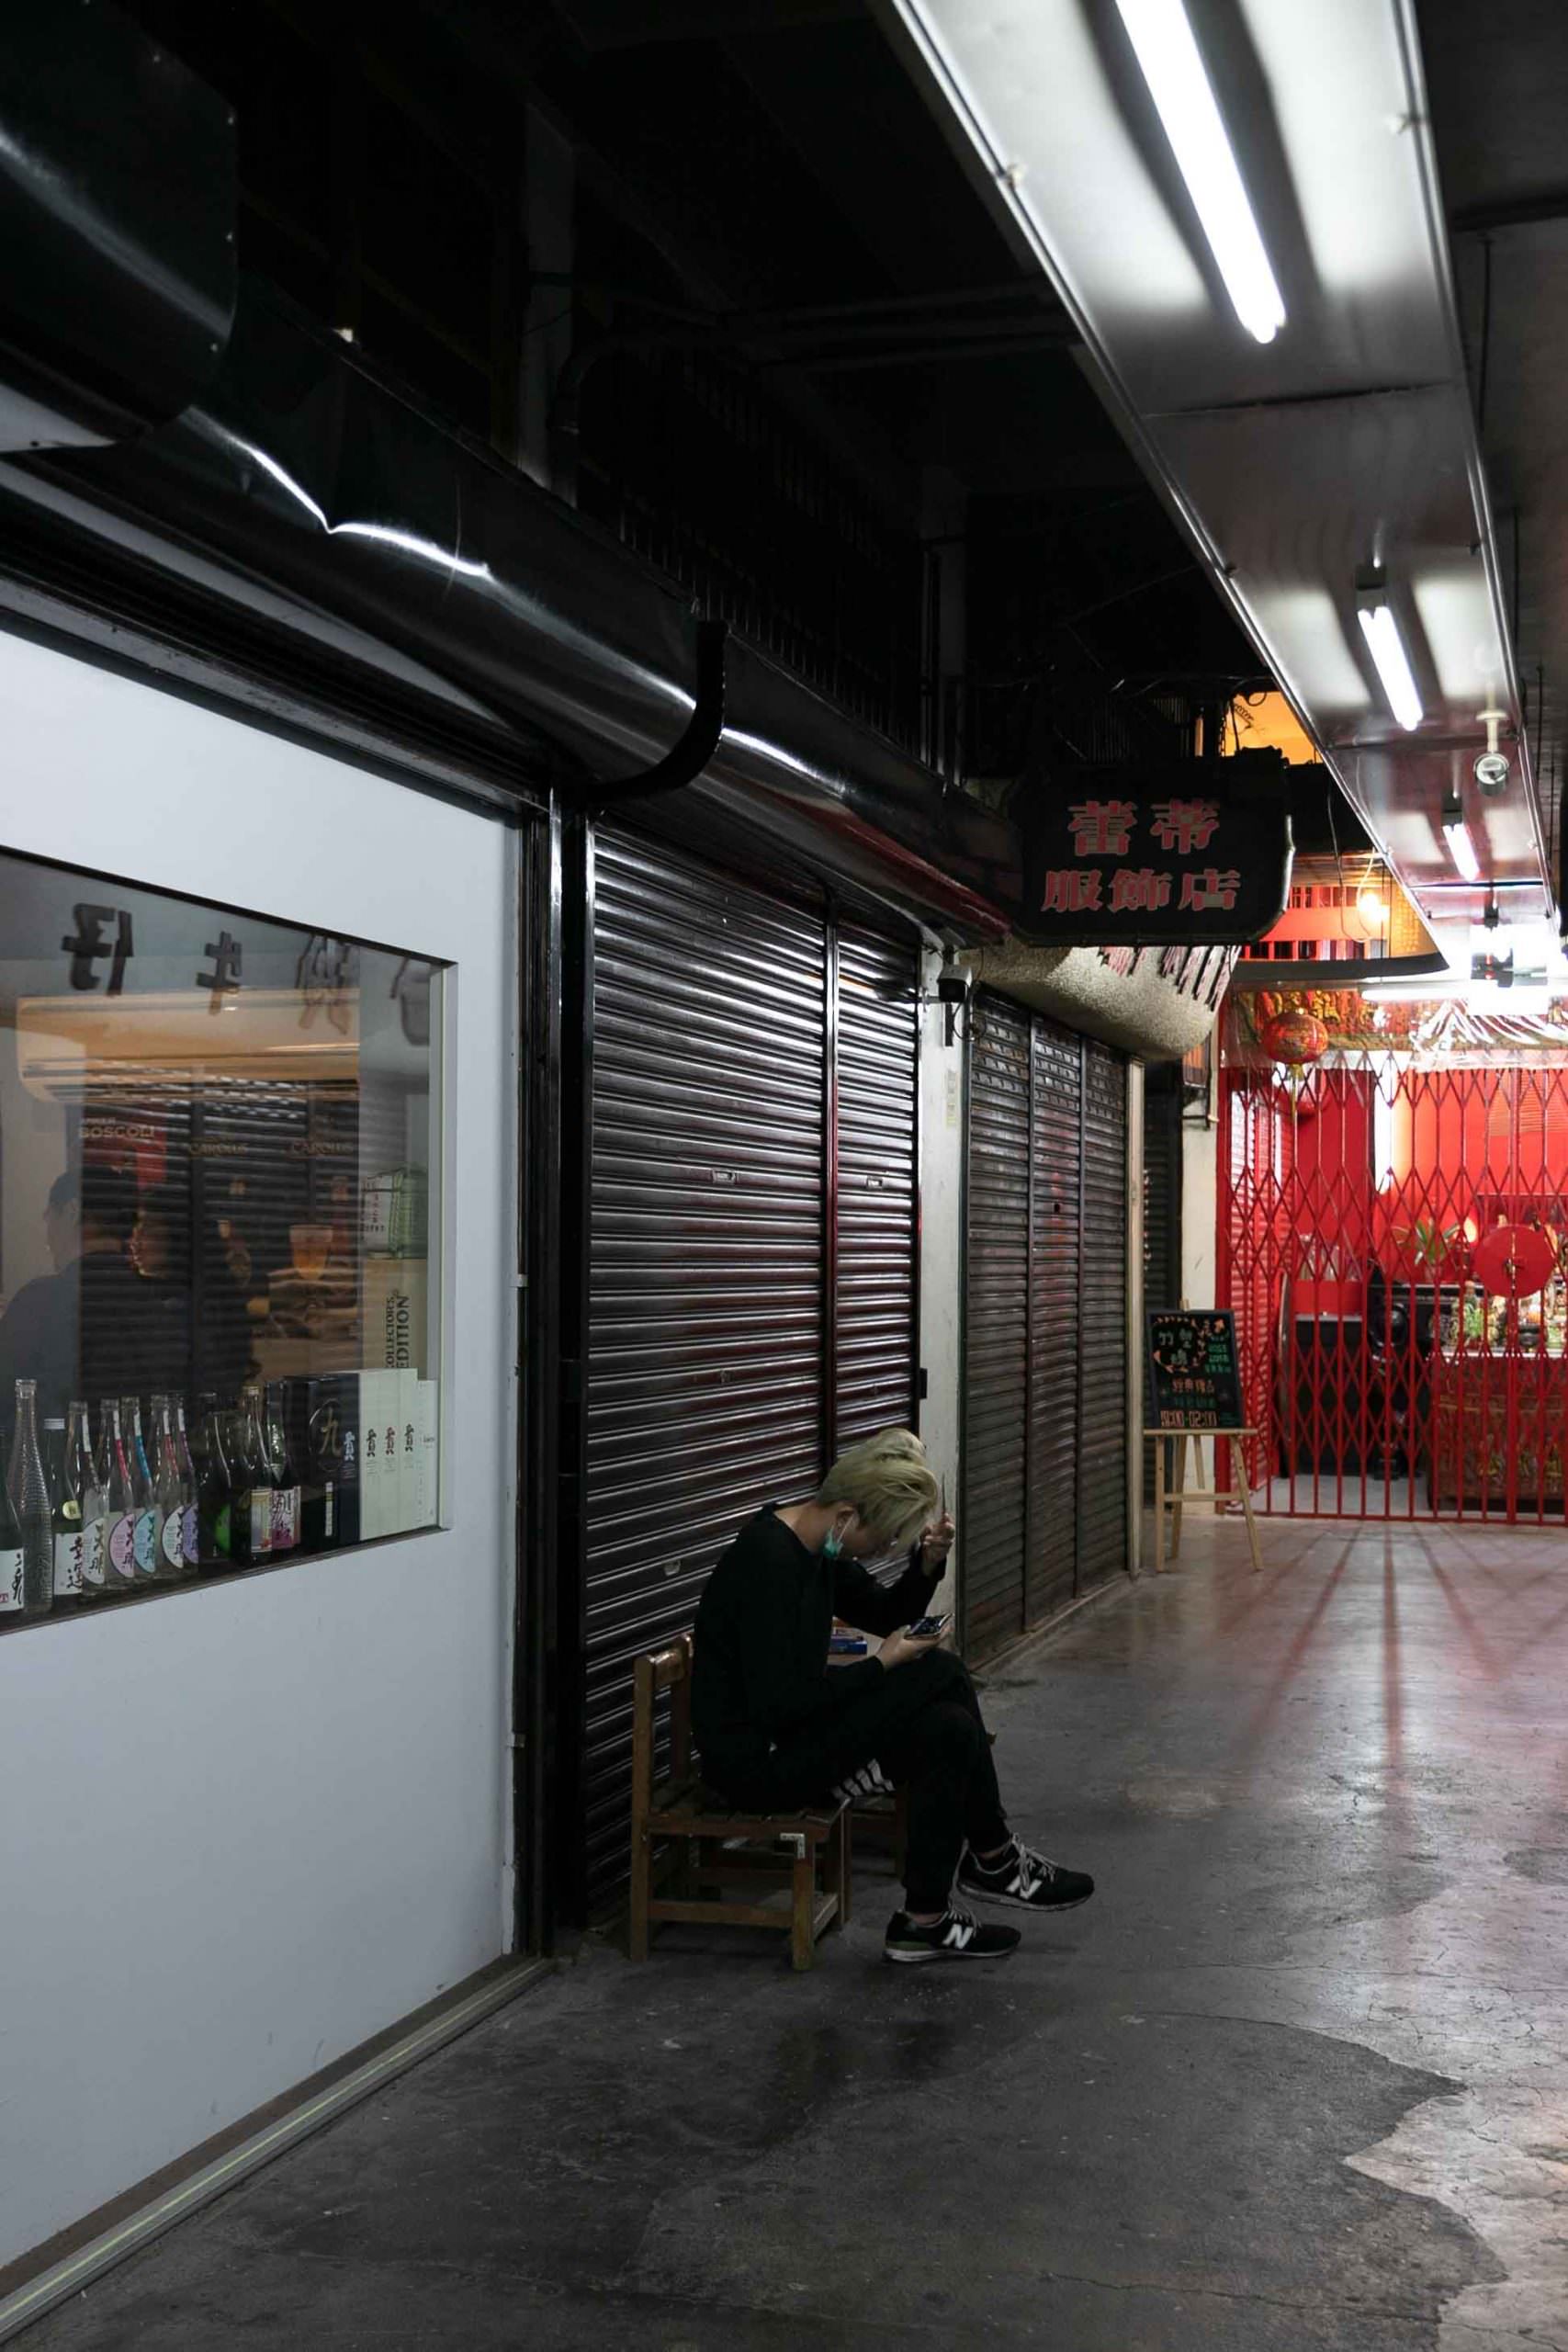 新竹酒吧｜ BAR SPEAKEASY MINI 禁酌令  由東門市場為入口，一起穿越時空至回憶裡的柑仔店。